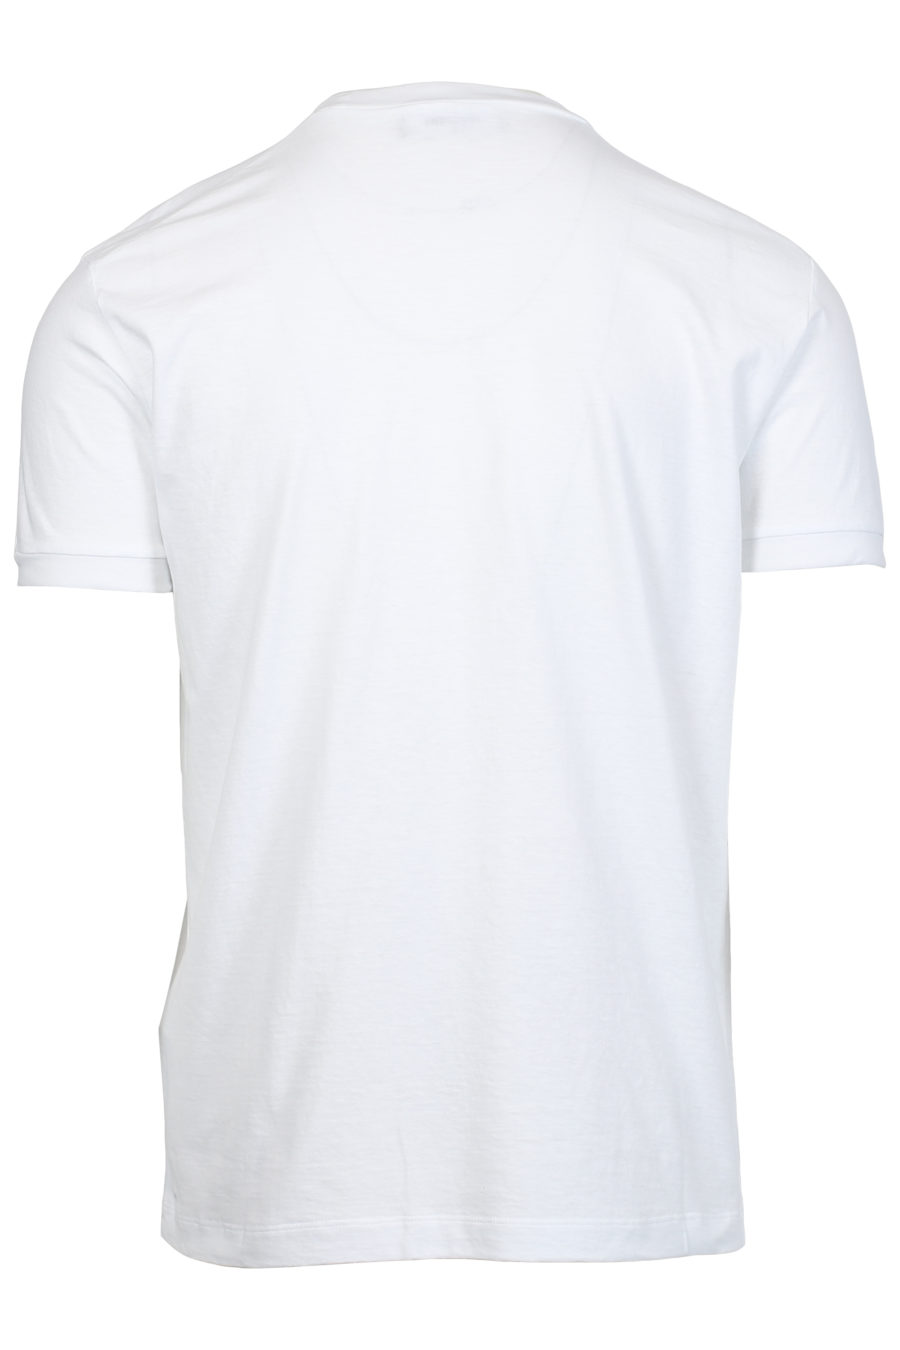 T-shirt branca com estampado de bandeira - IMG 2396